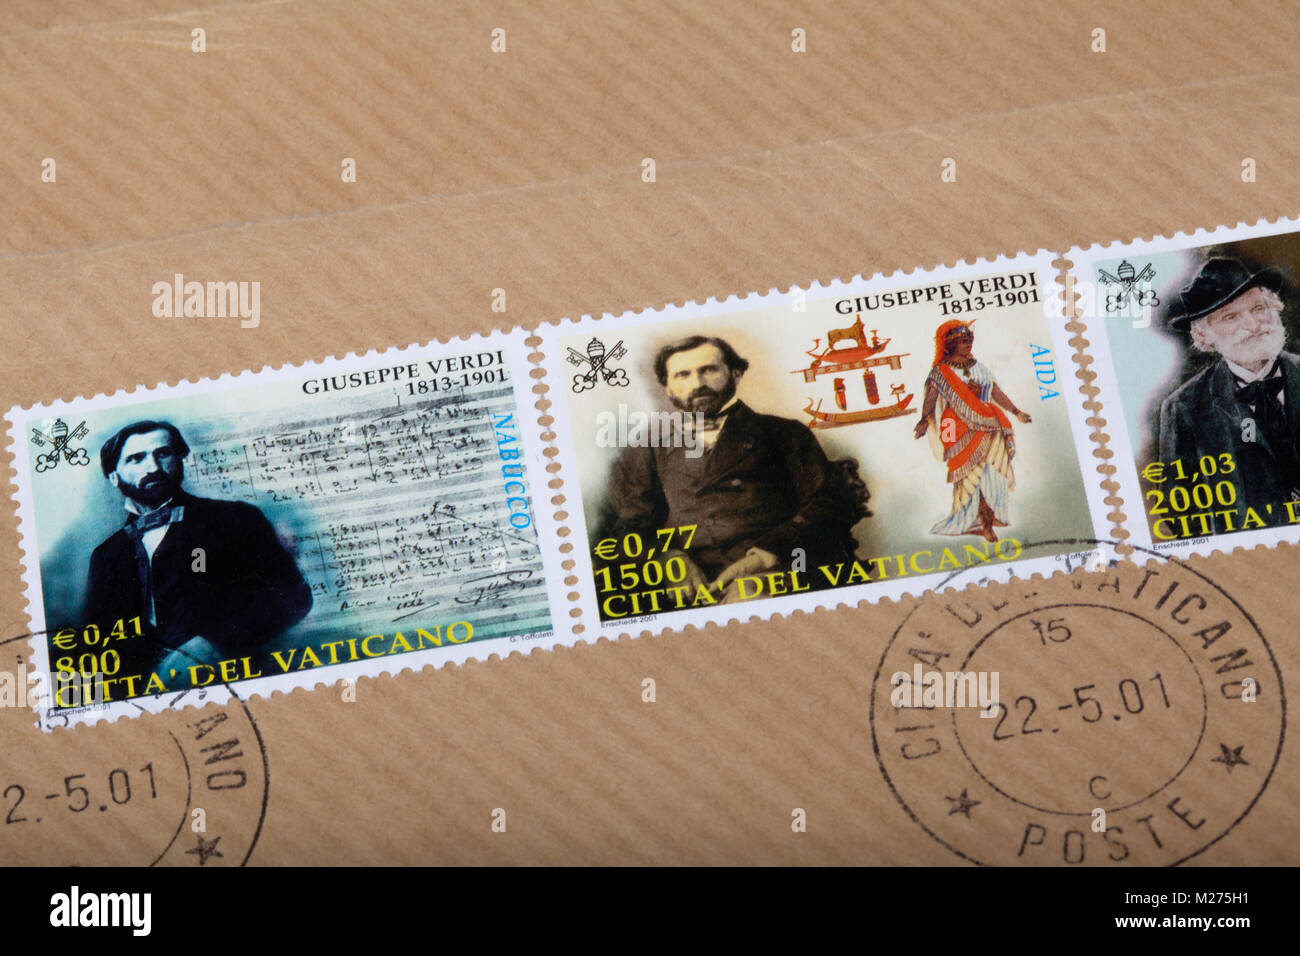 Briefmarken aus dem Vatikan auf einem Brief, gestanzt, Vatikan, Italien, Europa, gestempelte Briefmarken aus dem Vatikan, Giuseppe Verdi Stockfoto